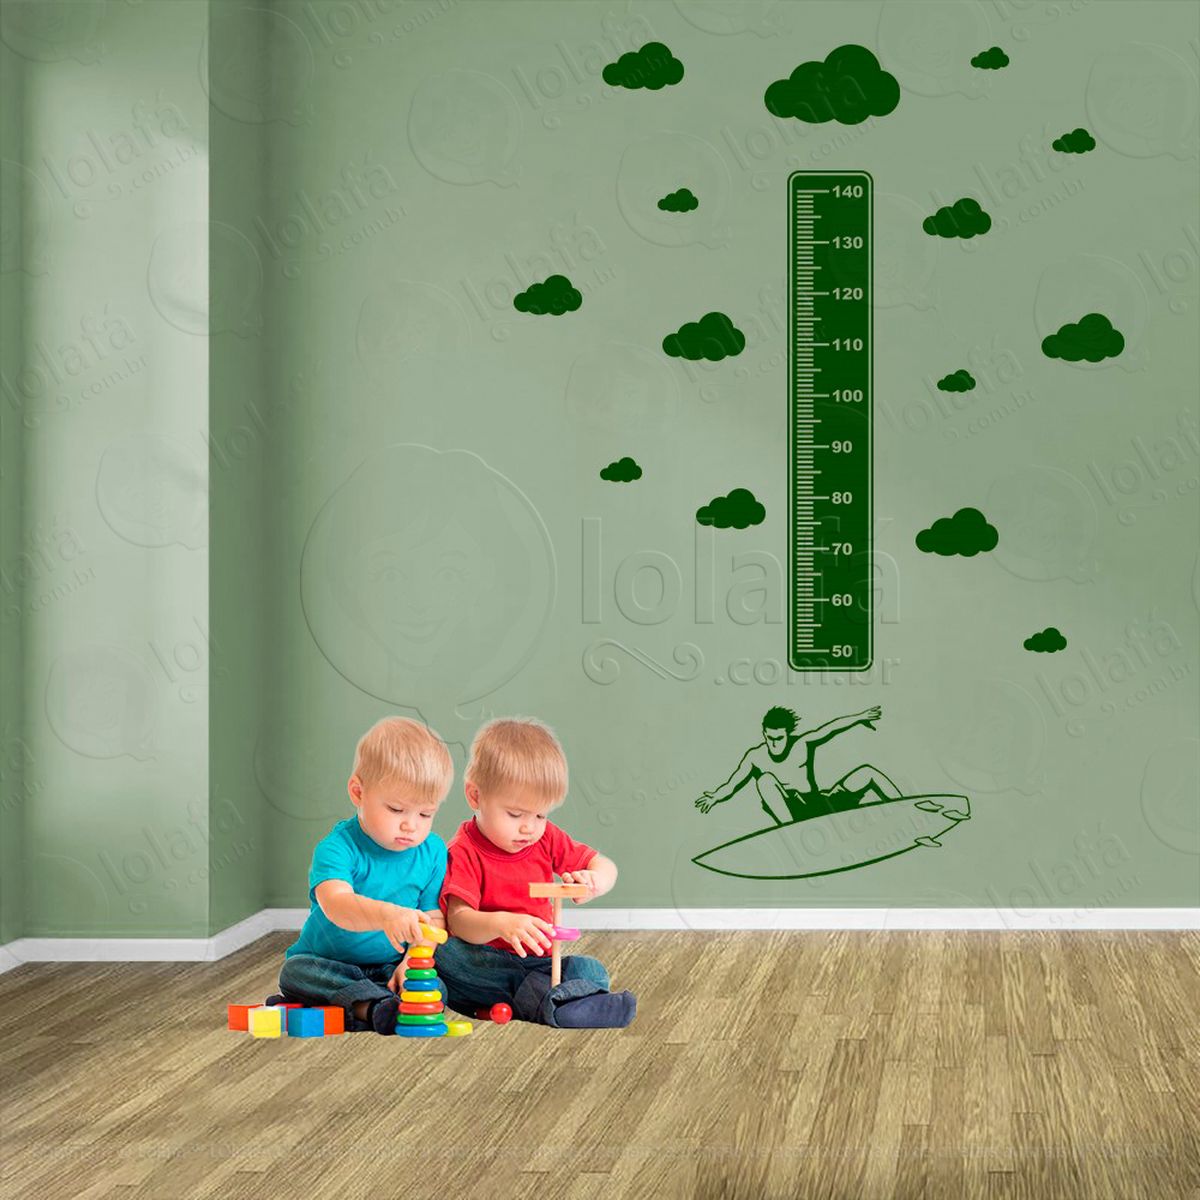 surf e nuvens adesivo régua de crescimento infantil, medidor de altura para quarto, porta e parede - mod:417